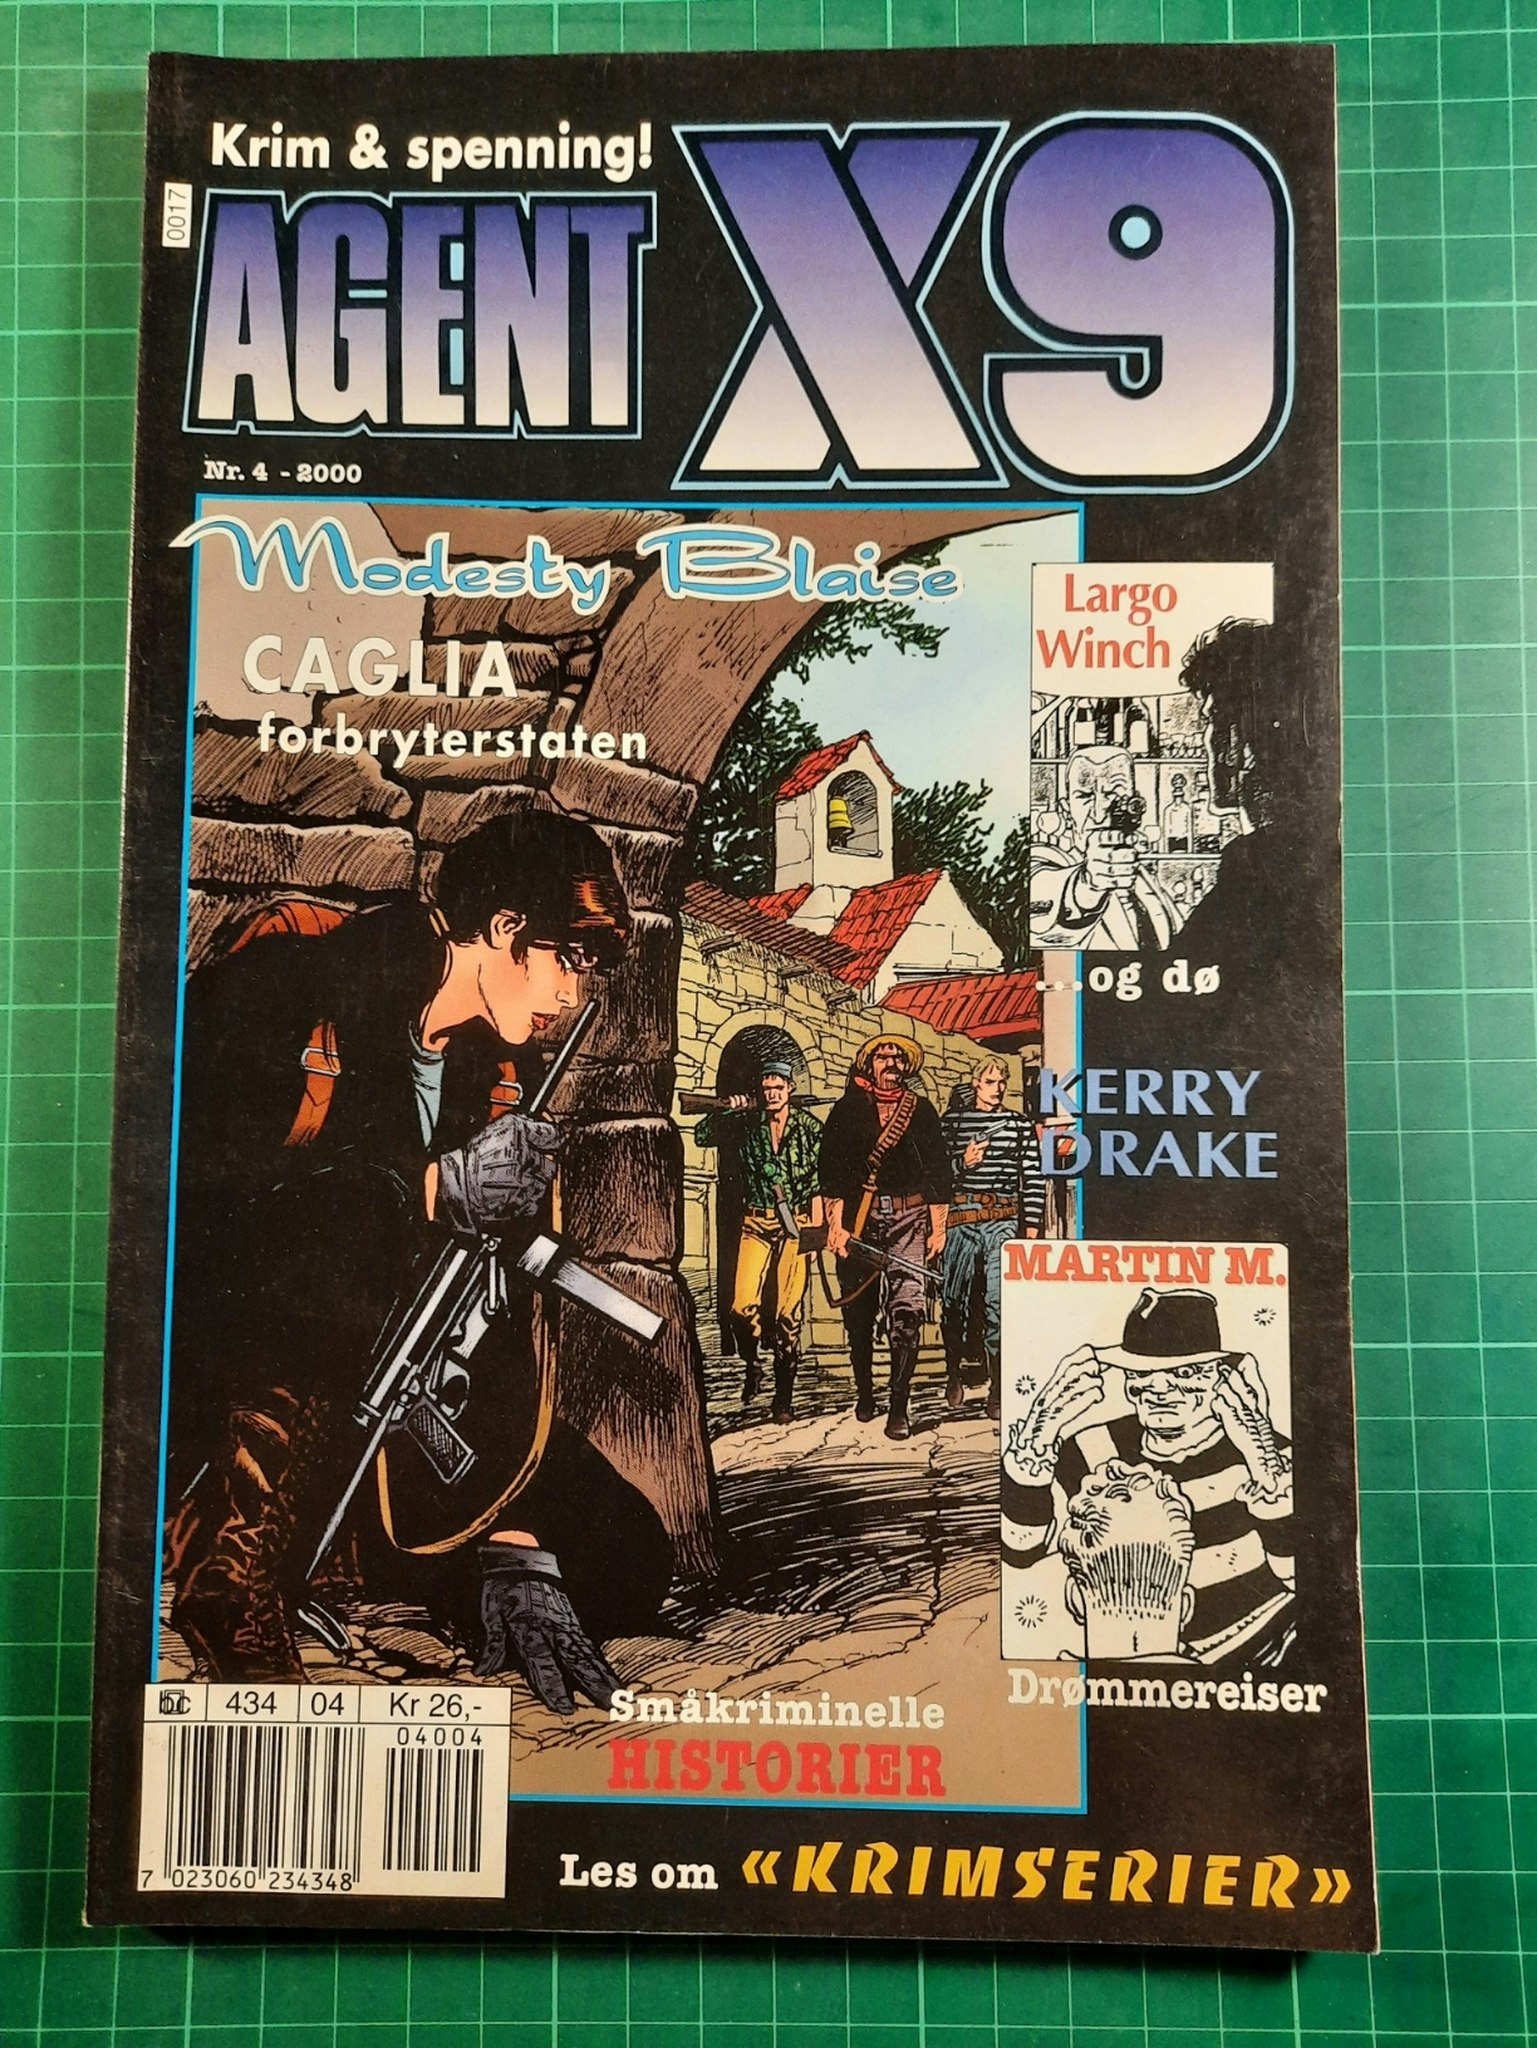 Agent X9 2000 - 04